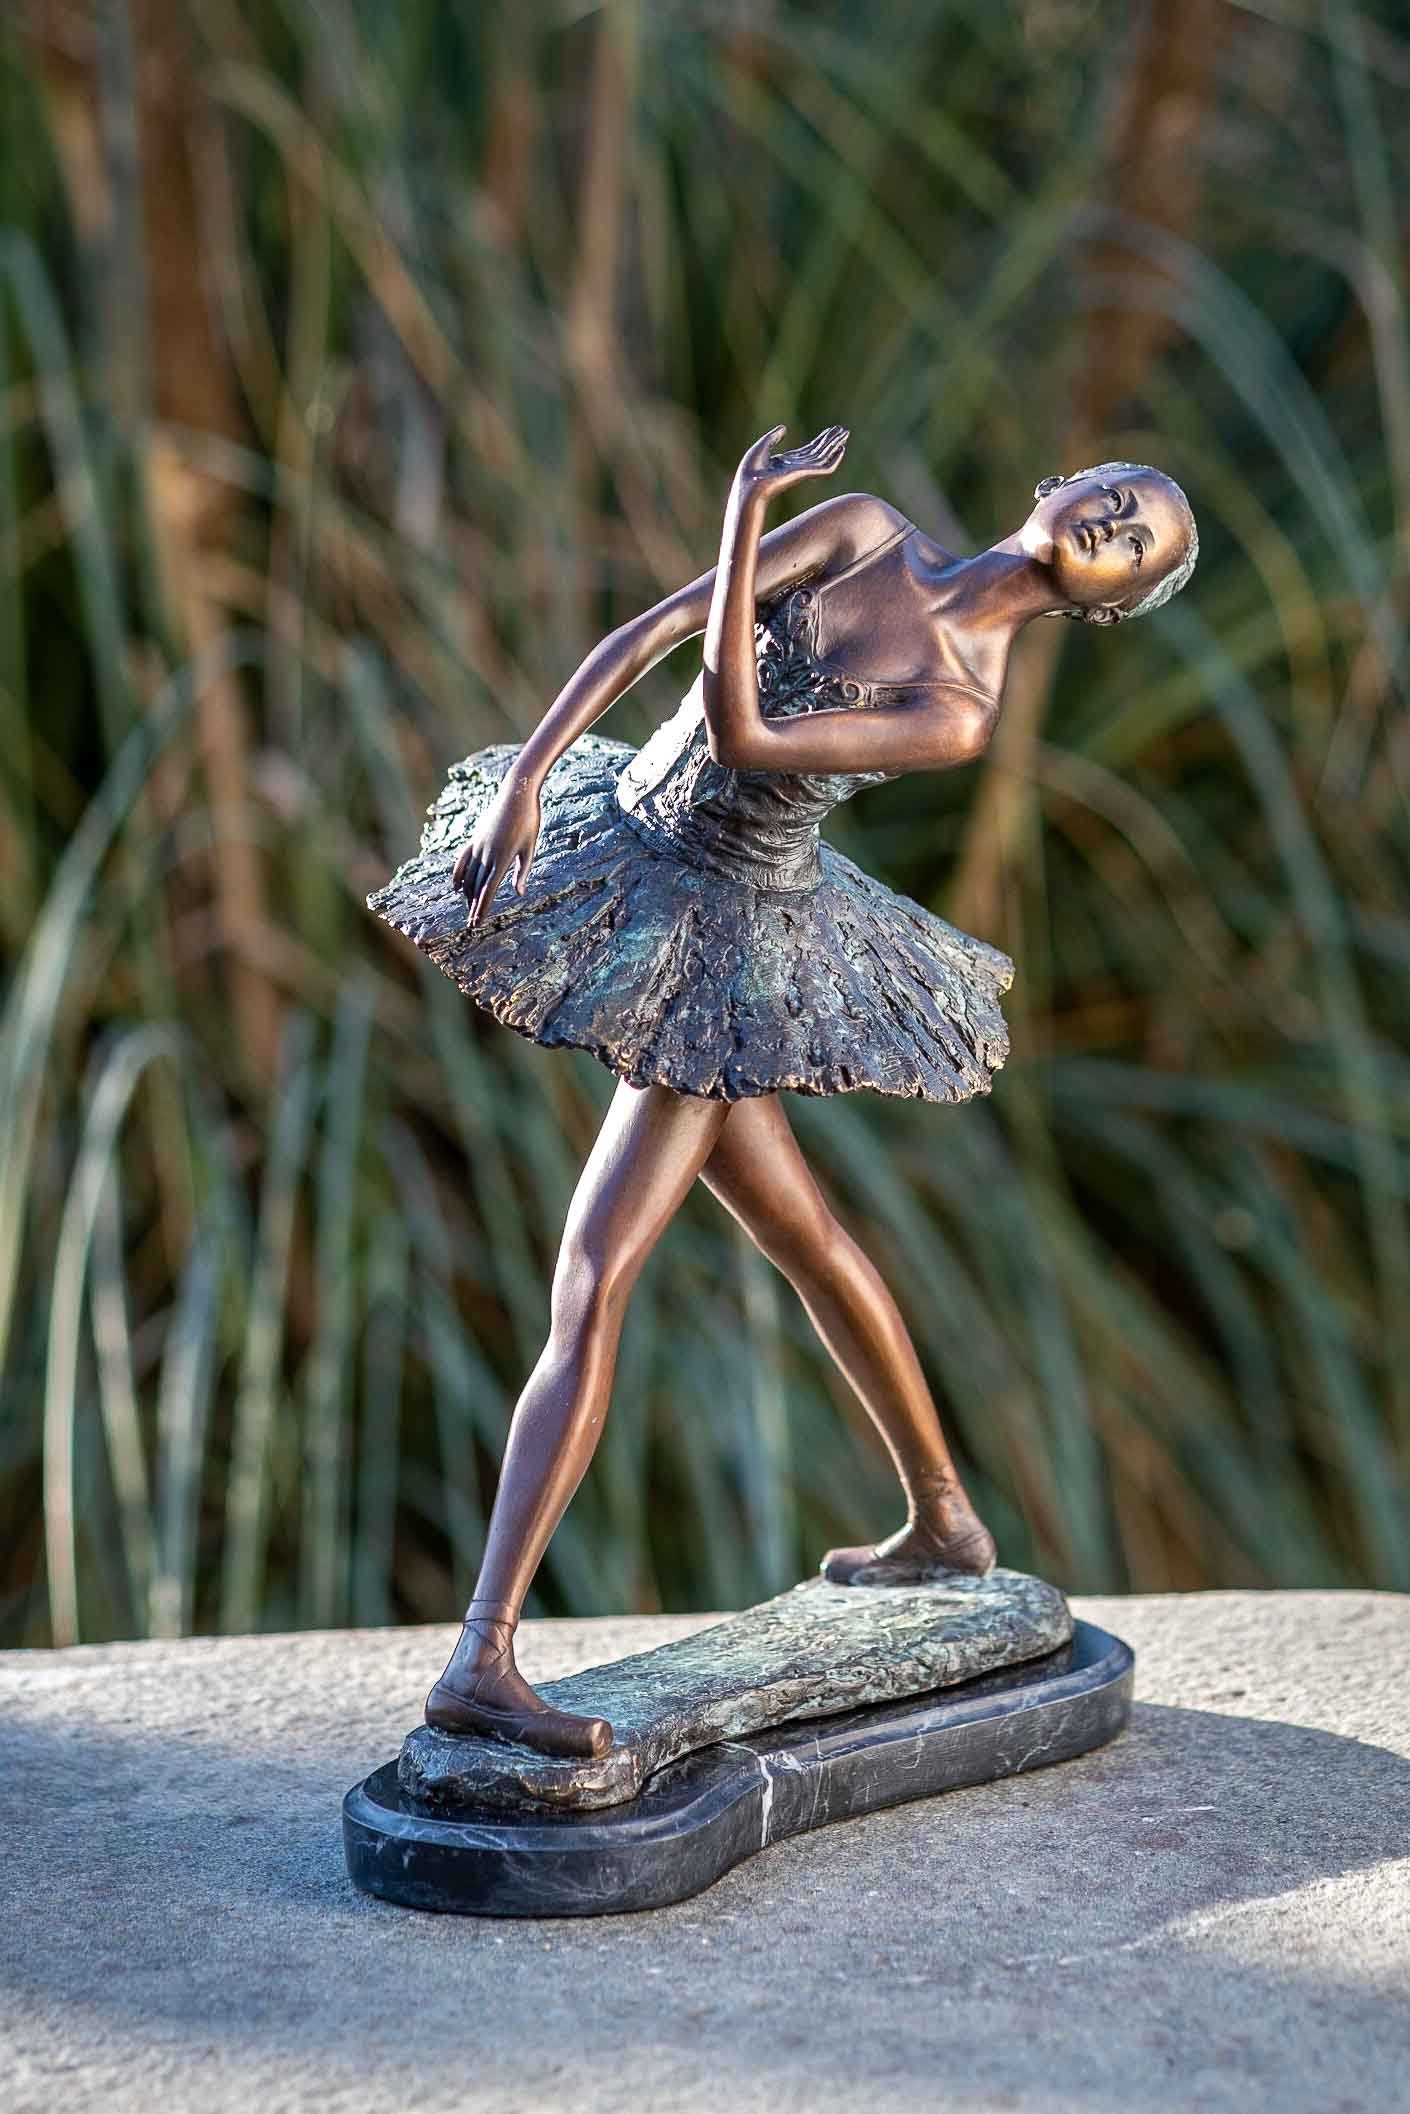 IDYL Gartenfigur IDYL Bronze-Skulptur Ballerine 31 cm, Bronze – sehr robust – Langlebig – witterungsbeständig gegen Frost, Regen und UV-Strahlung. Die Modelle werden in Wachsausschmelzverfahren in Bronze gegossen und von Hand patiniert.